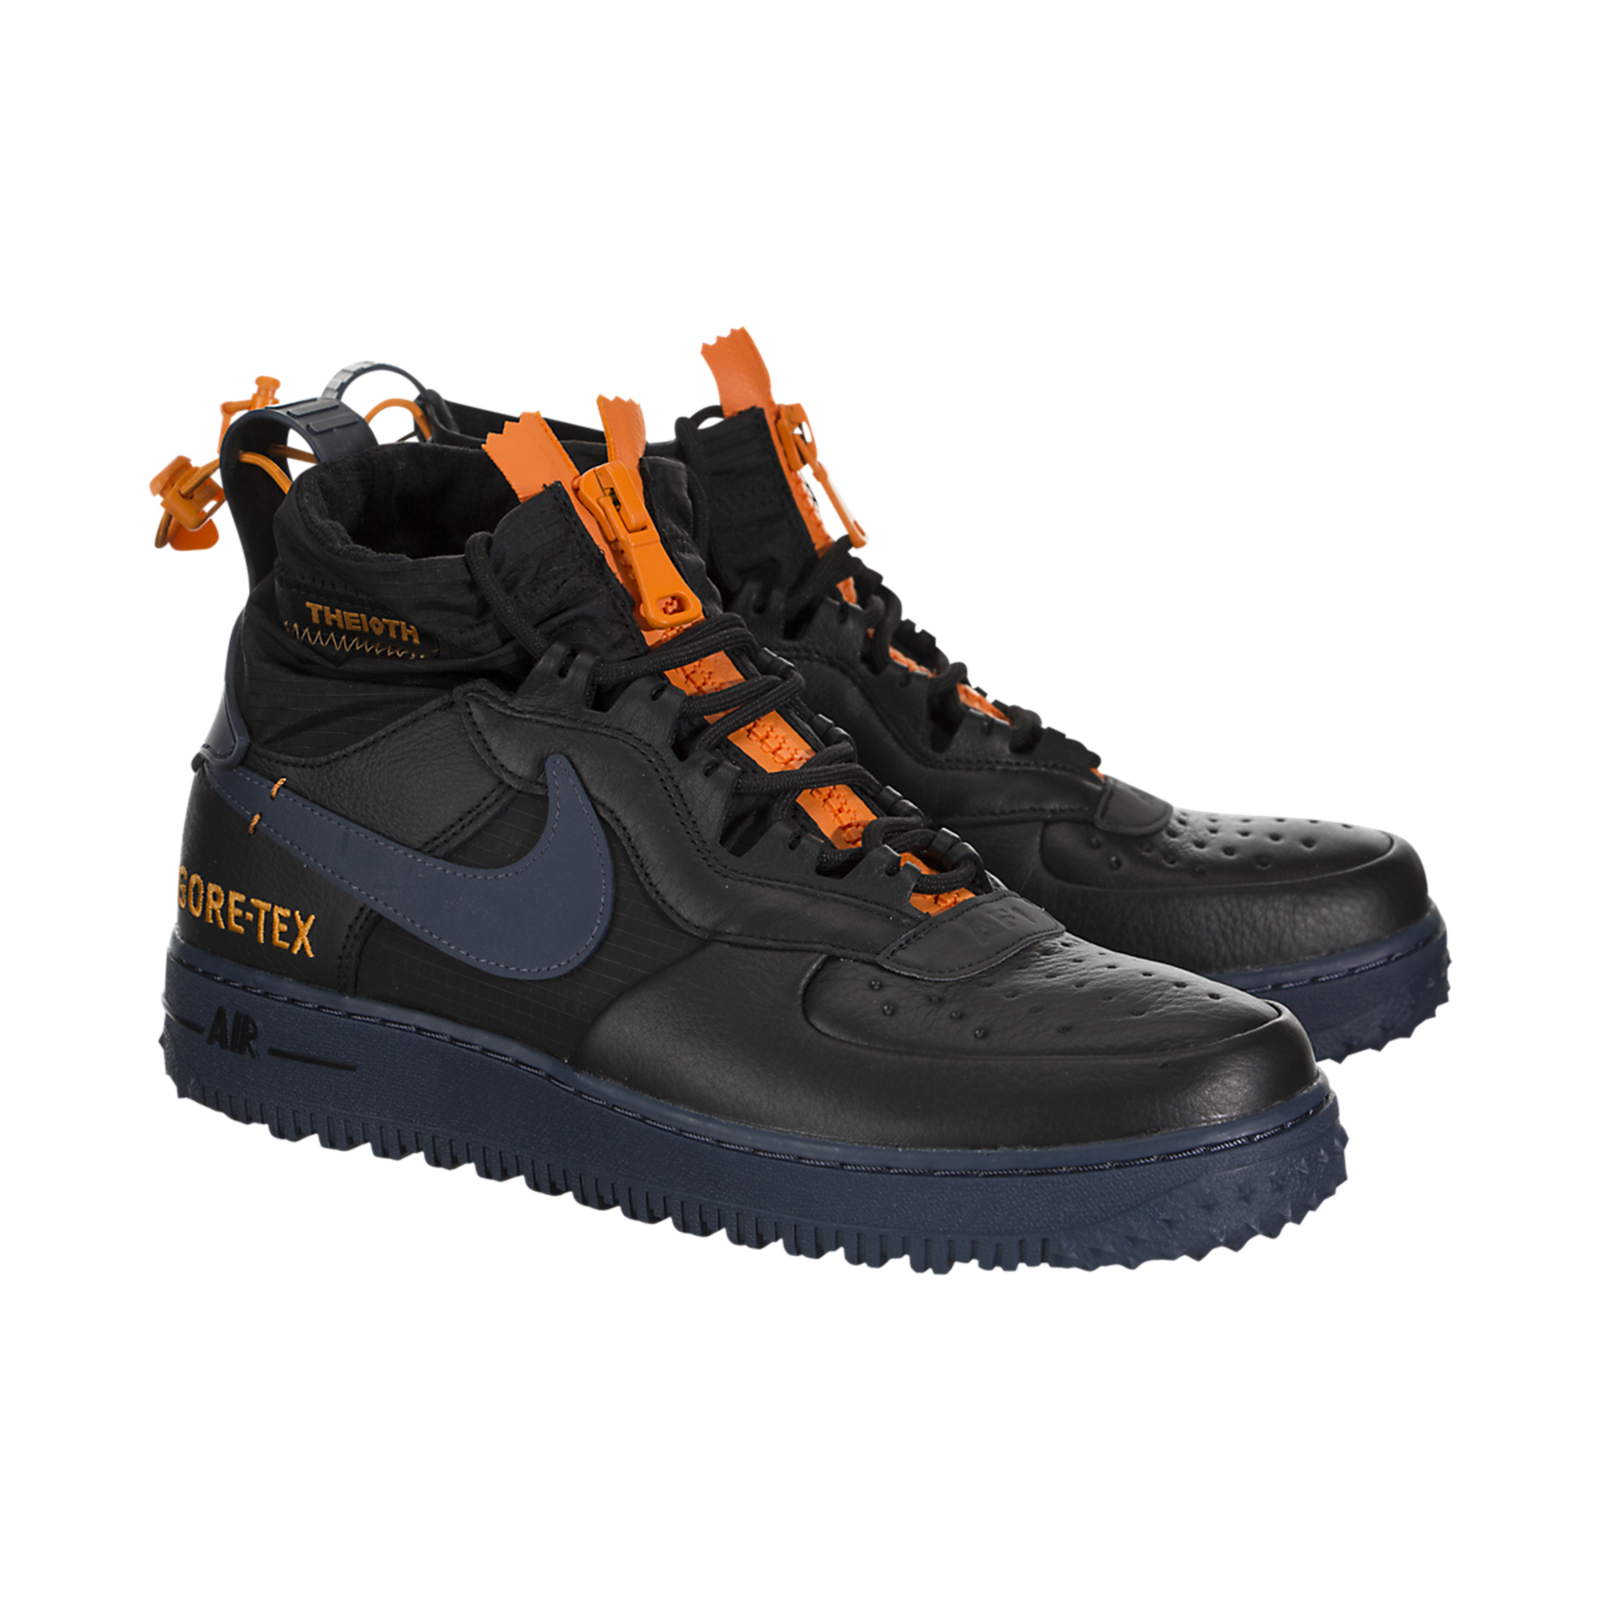 Nike Air Force 1 WTR GTX - cq7211-001 - Sneakerhead.com – SNEAKERHEAD.com